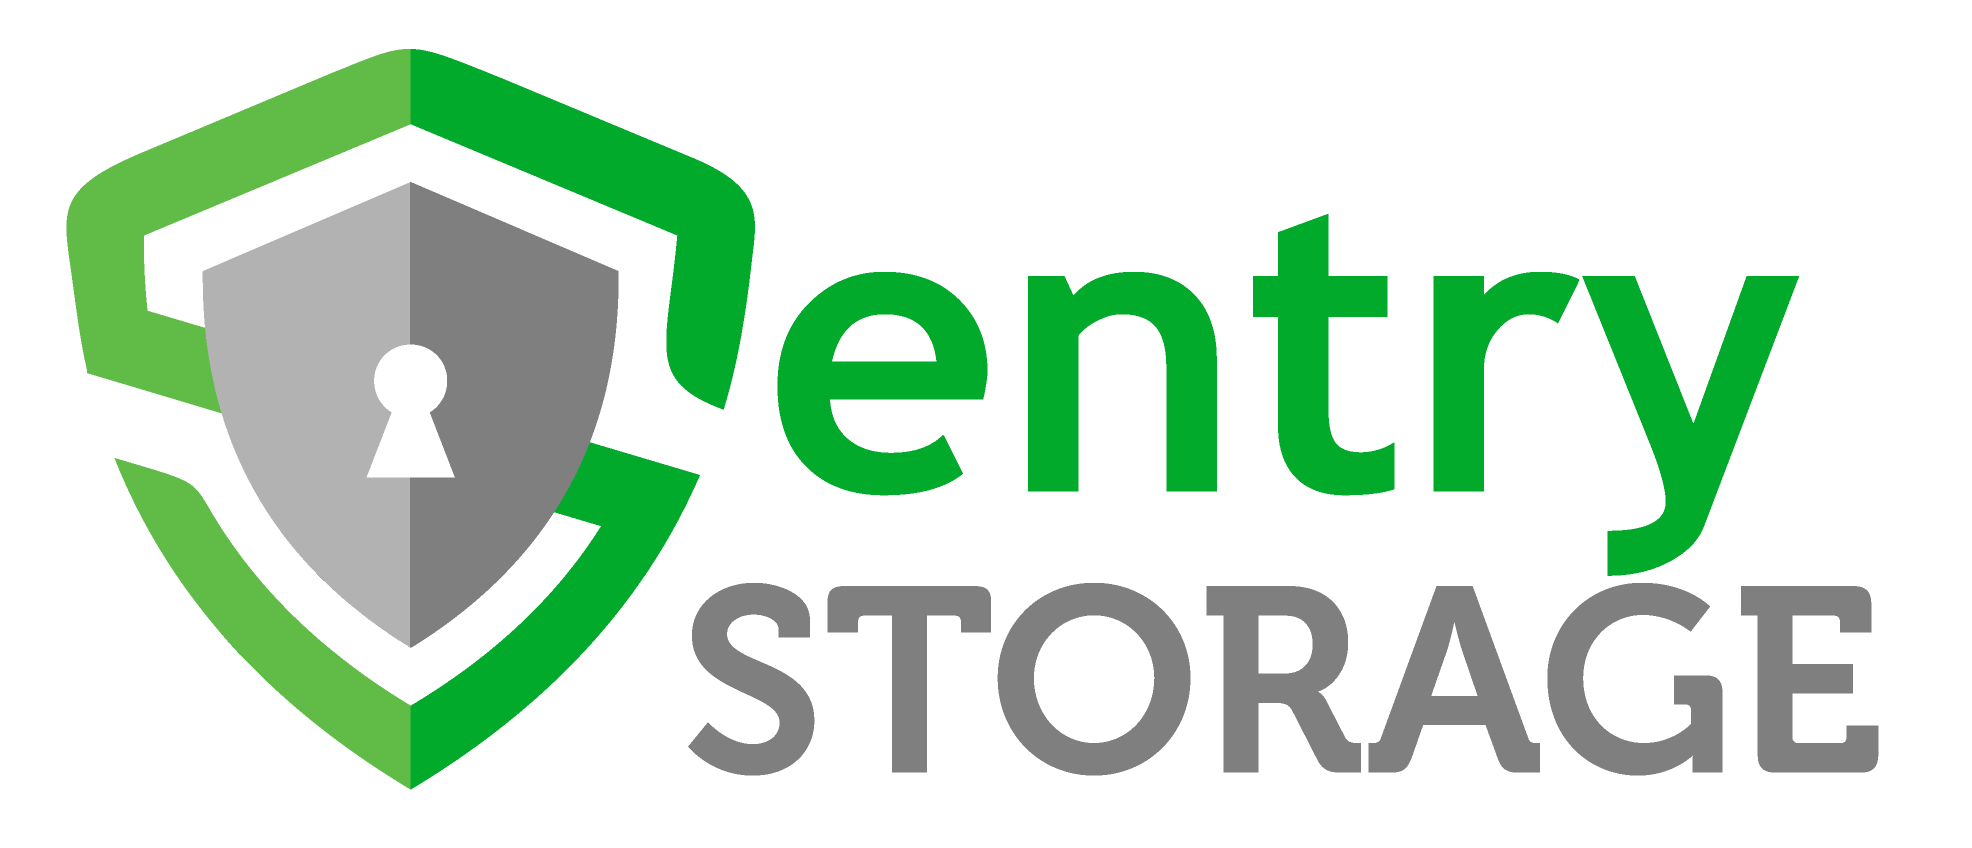 storage athens logo